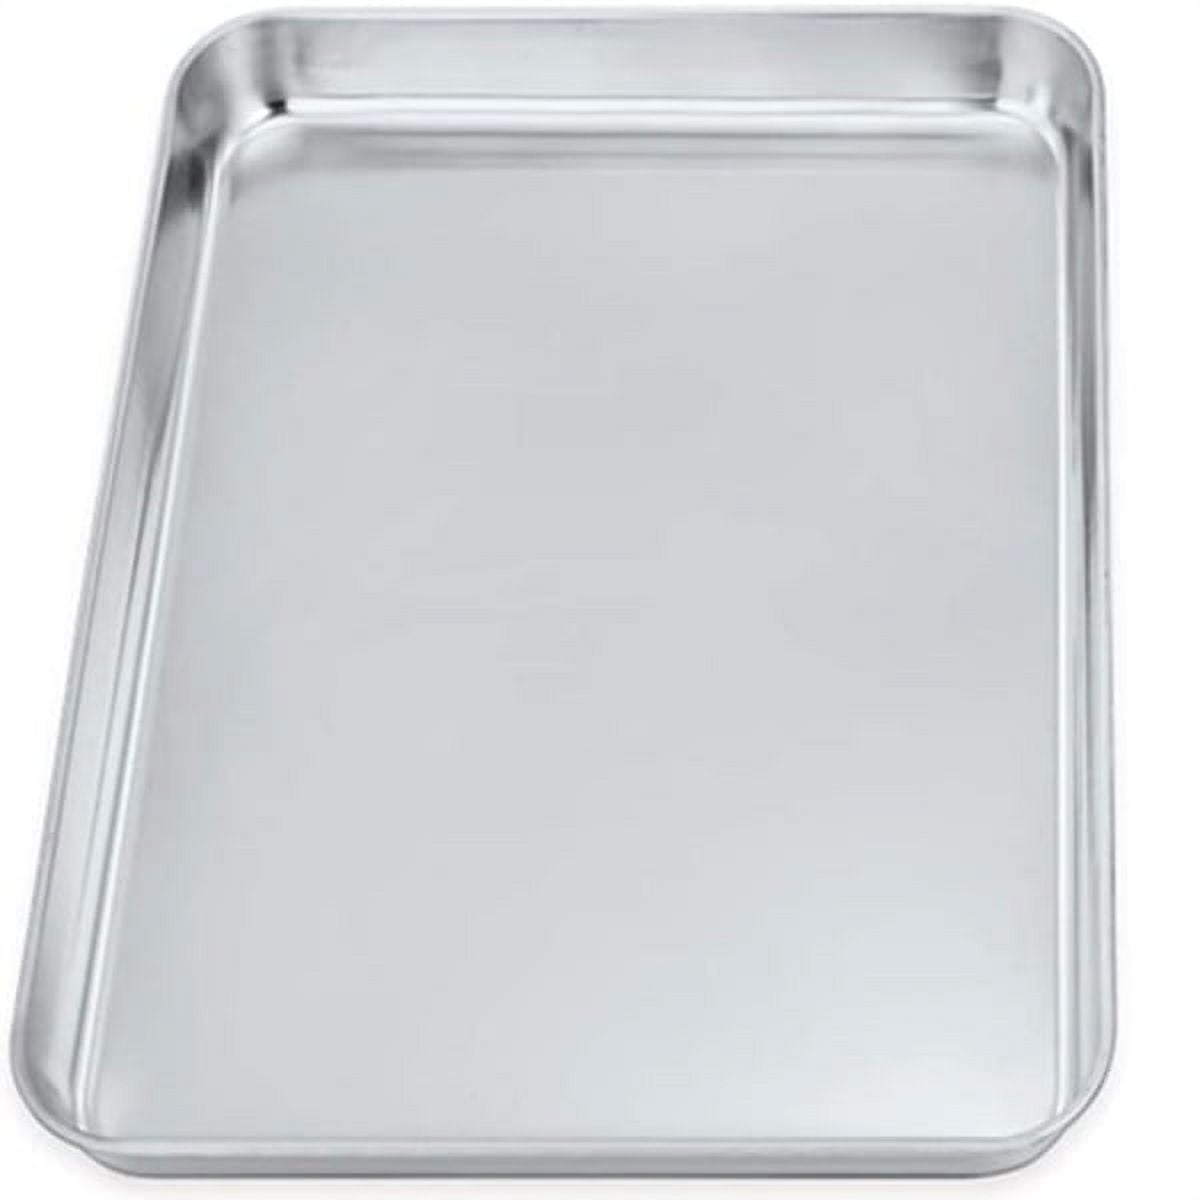 Cuisipro 15.5 x 10.5-Inch Rectangular Steel Nonstick Baking Sheet Pan, 1 ea  - Harris Teeter